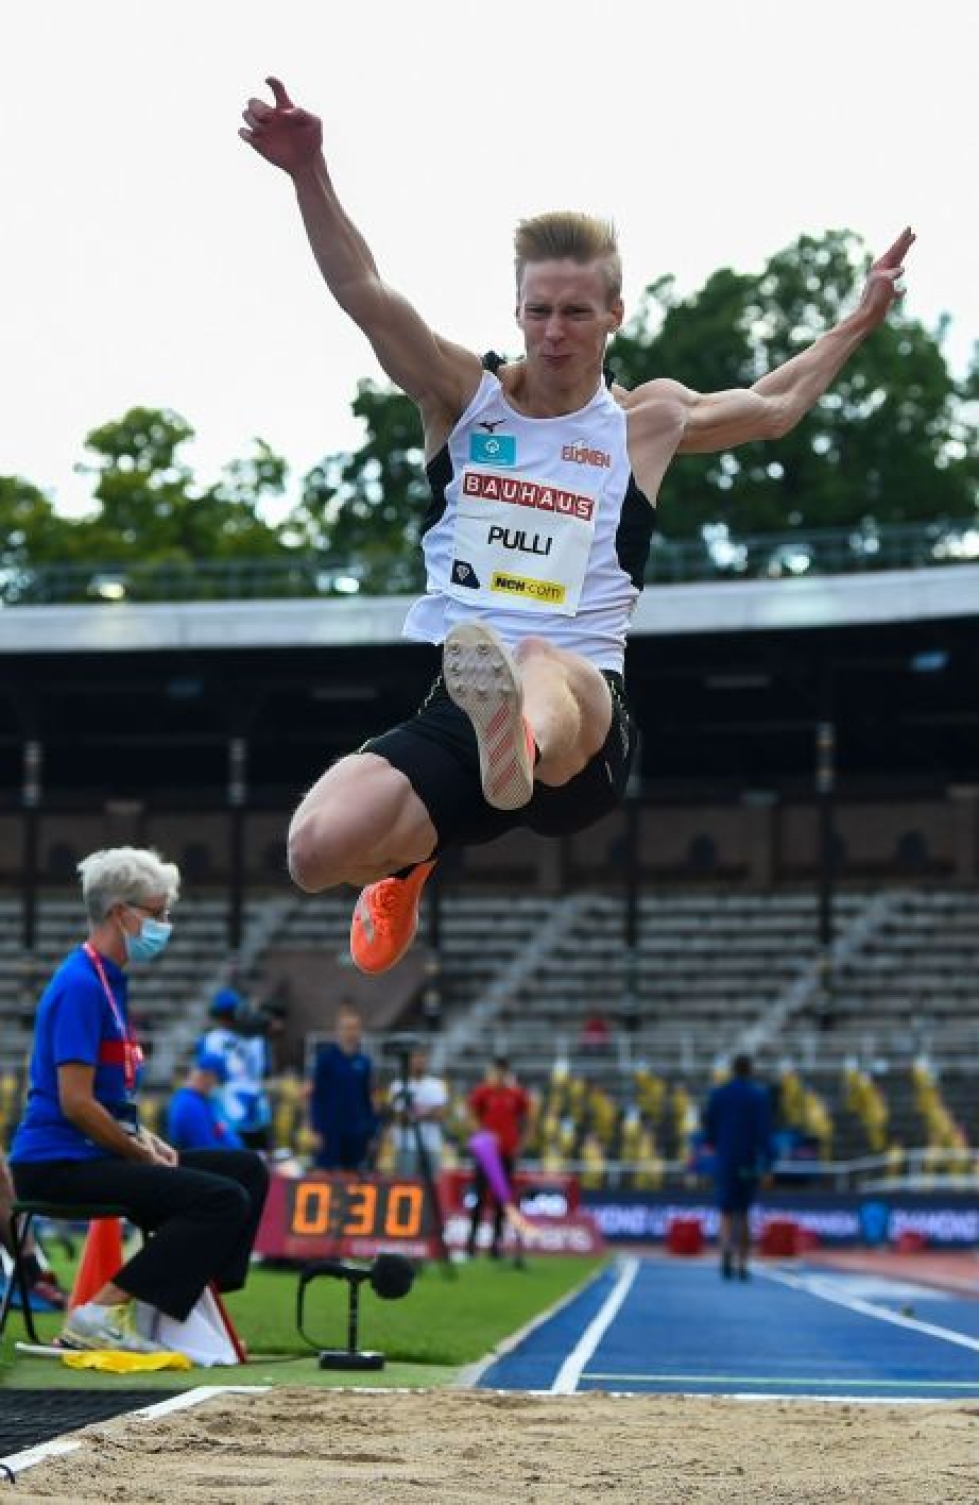 Pituushyppääjä Kristian Pulli kilpailemassa Tukholmassa 23. elokuuta. Lehtikuva/AFP